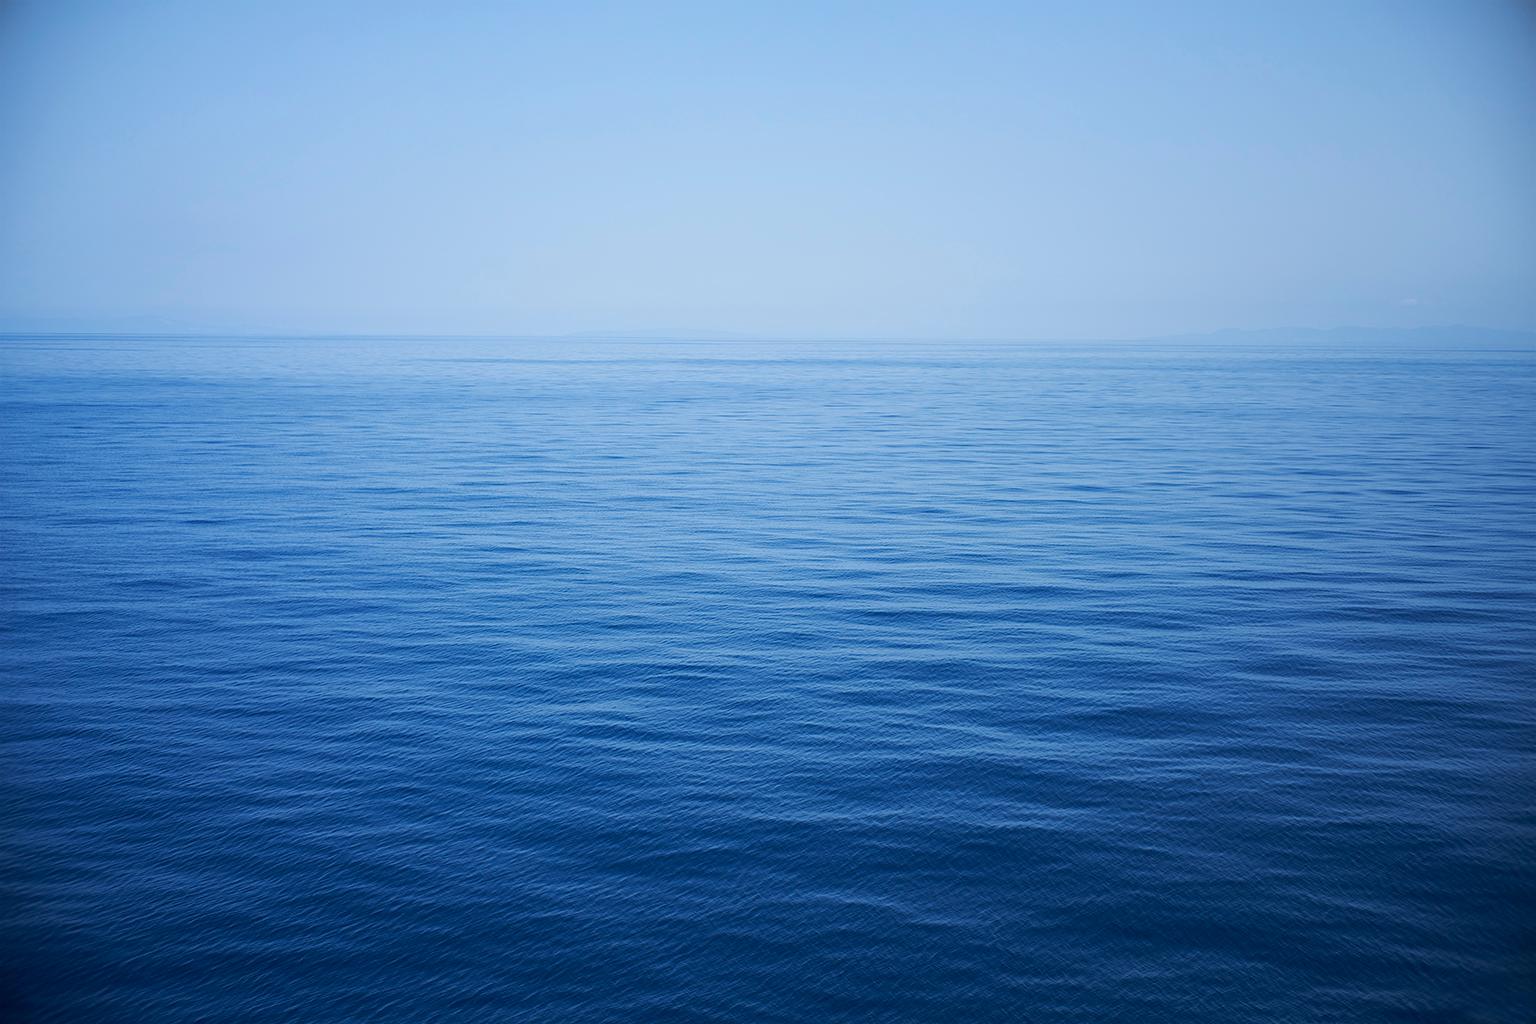 Frank Schott Color Photograph - Seascape X - large format photograph of monochrome blue water surface & horizon